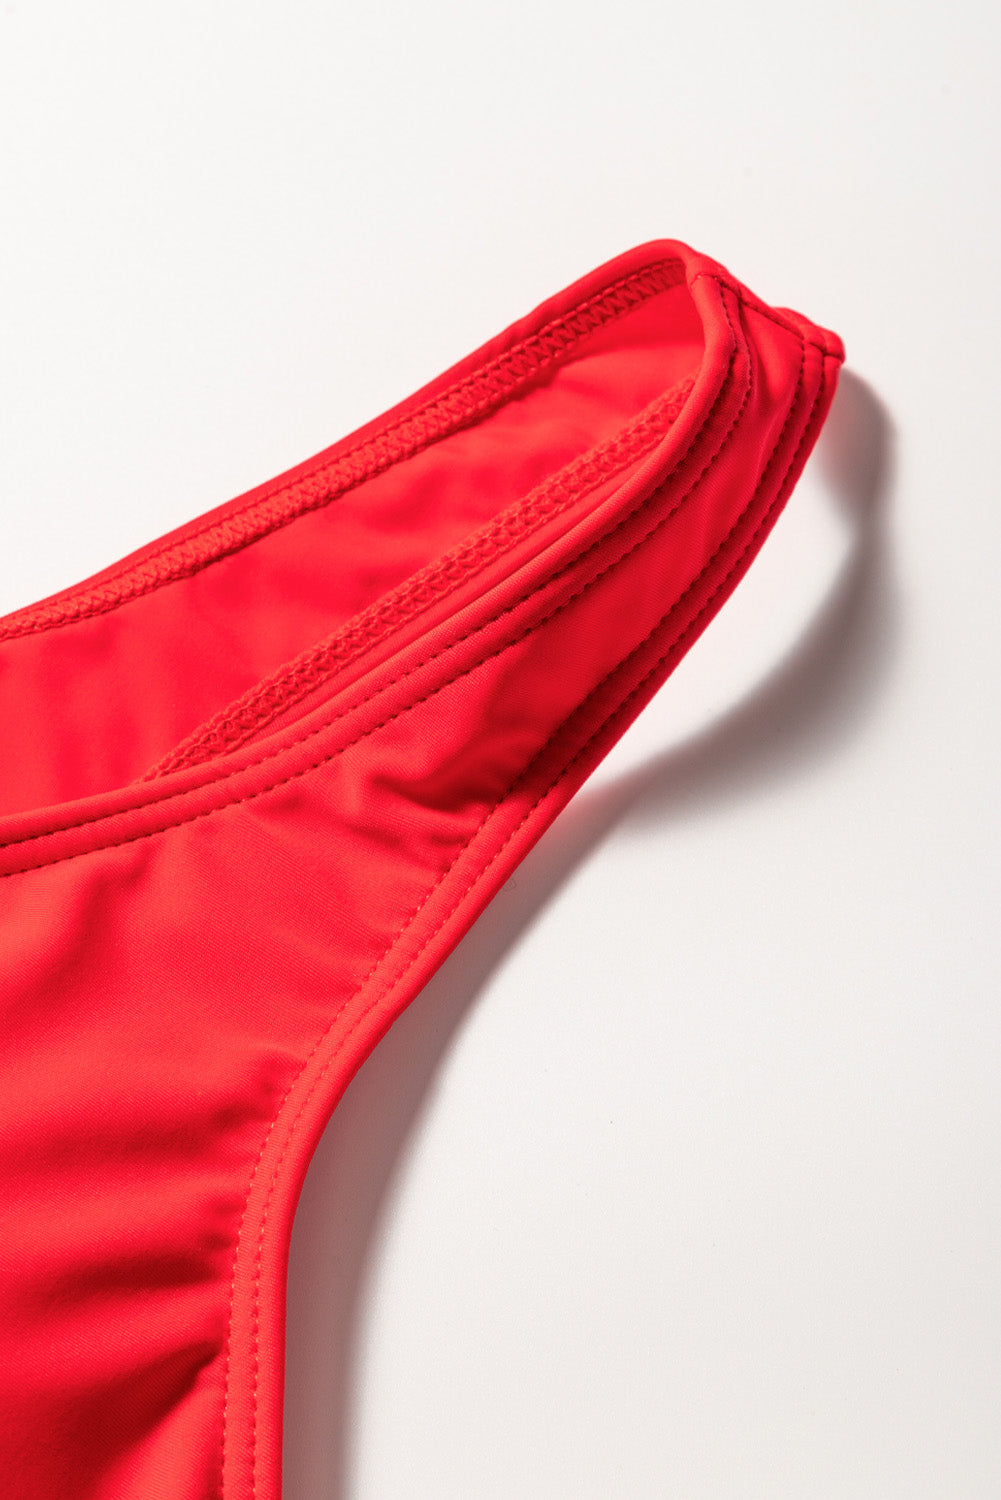 Vatrenocrveni nebeskoplavi bikini set s visokim strukom i otiskom na vezanje